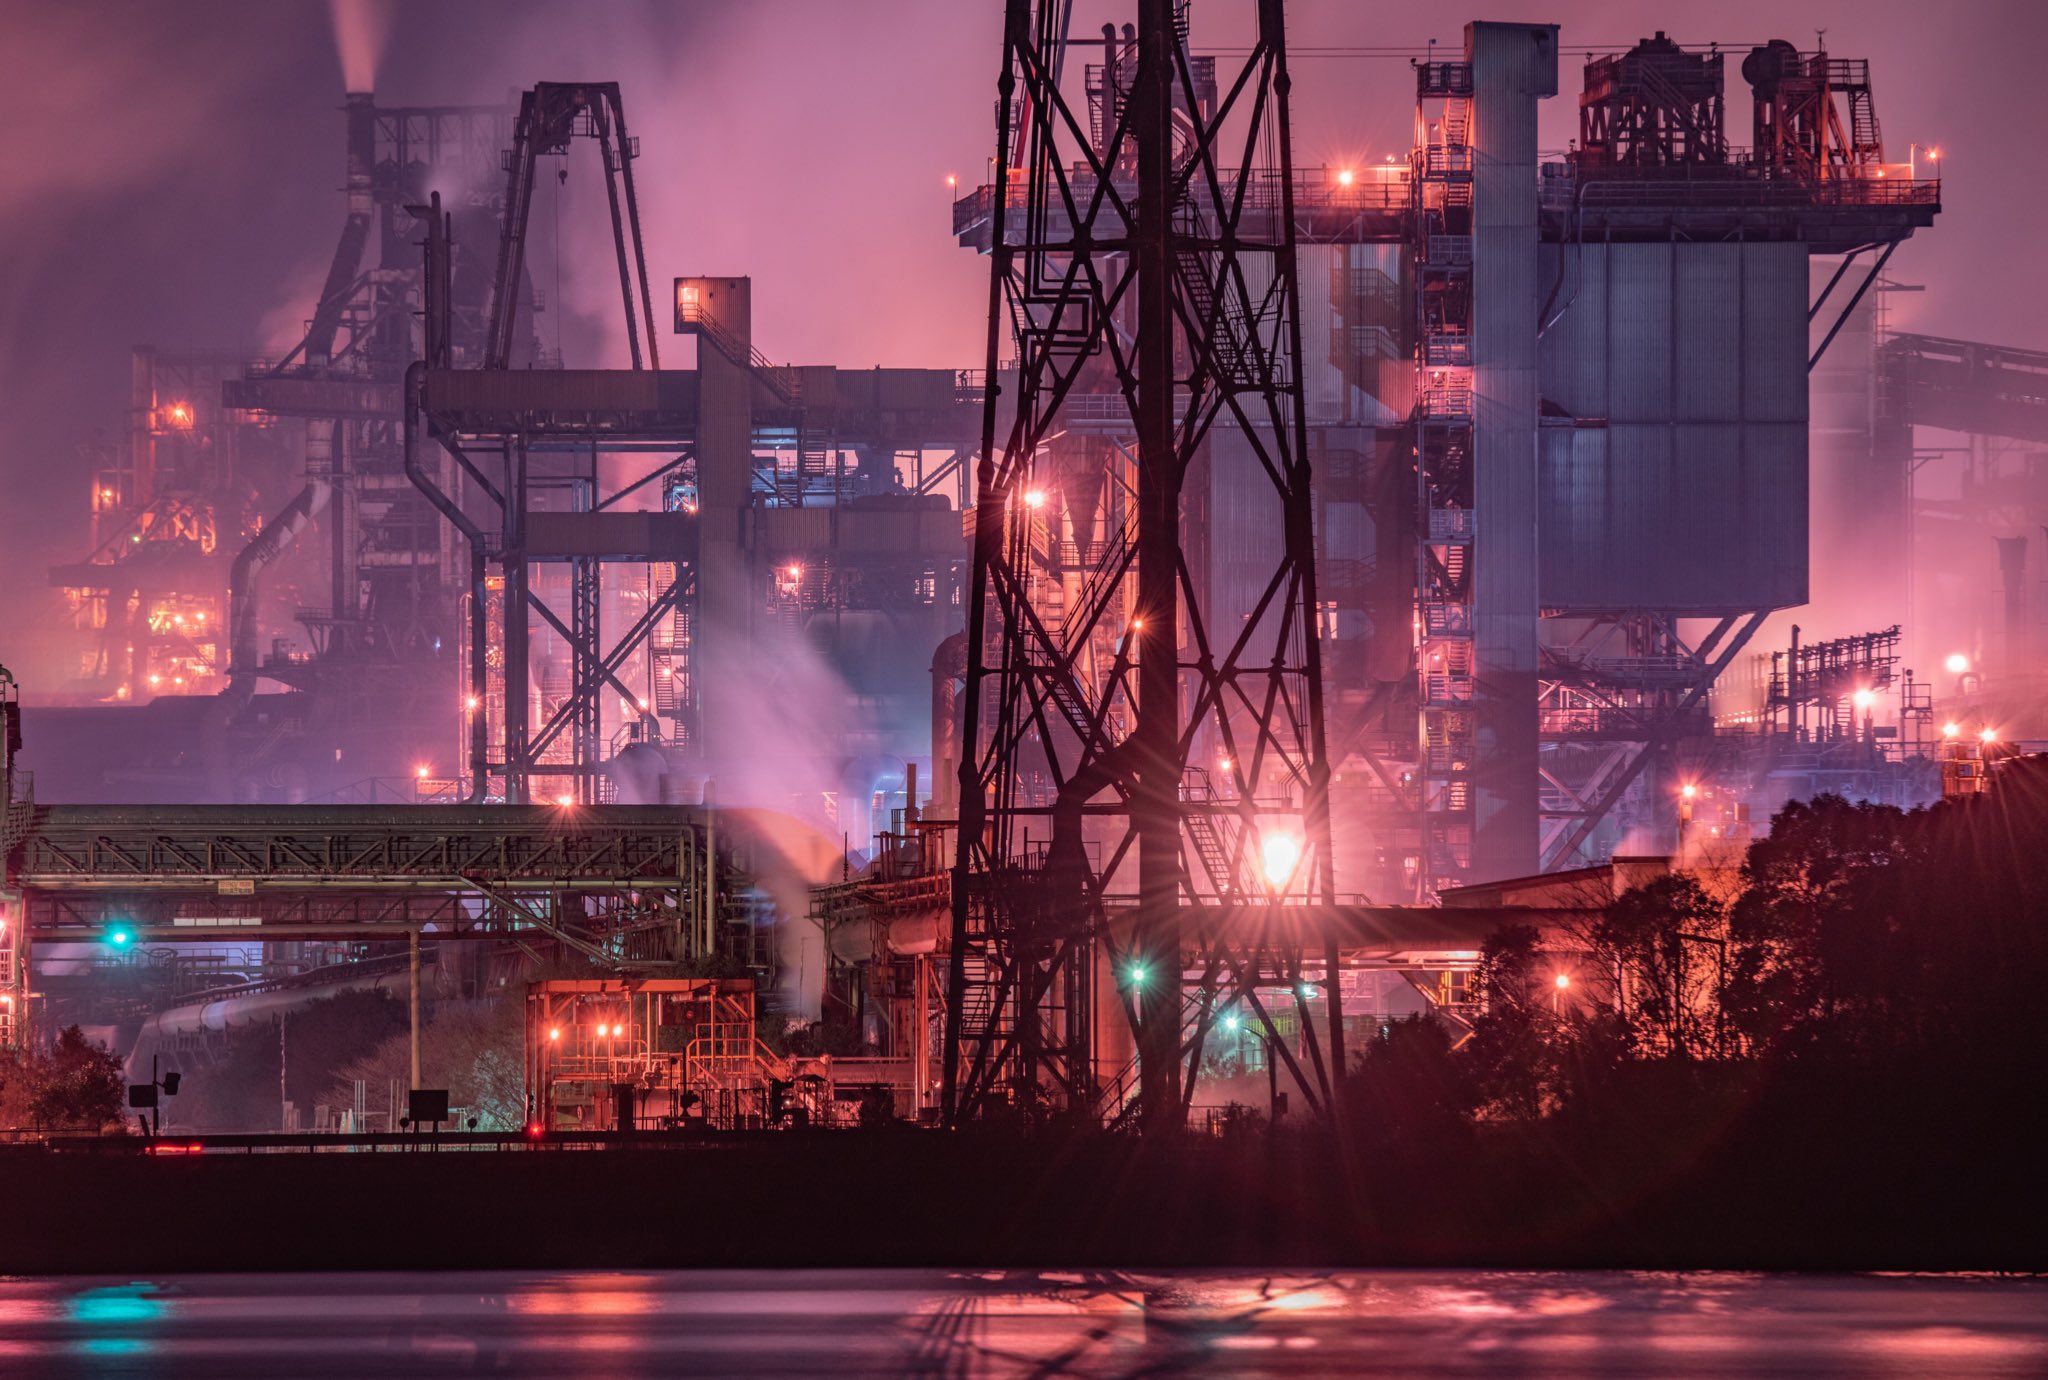 現實版神羅城？攝影家拍攝現實鋼鐵廠風景酷似米德加爾引熱議